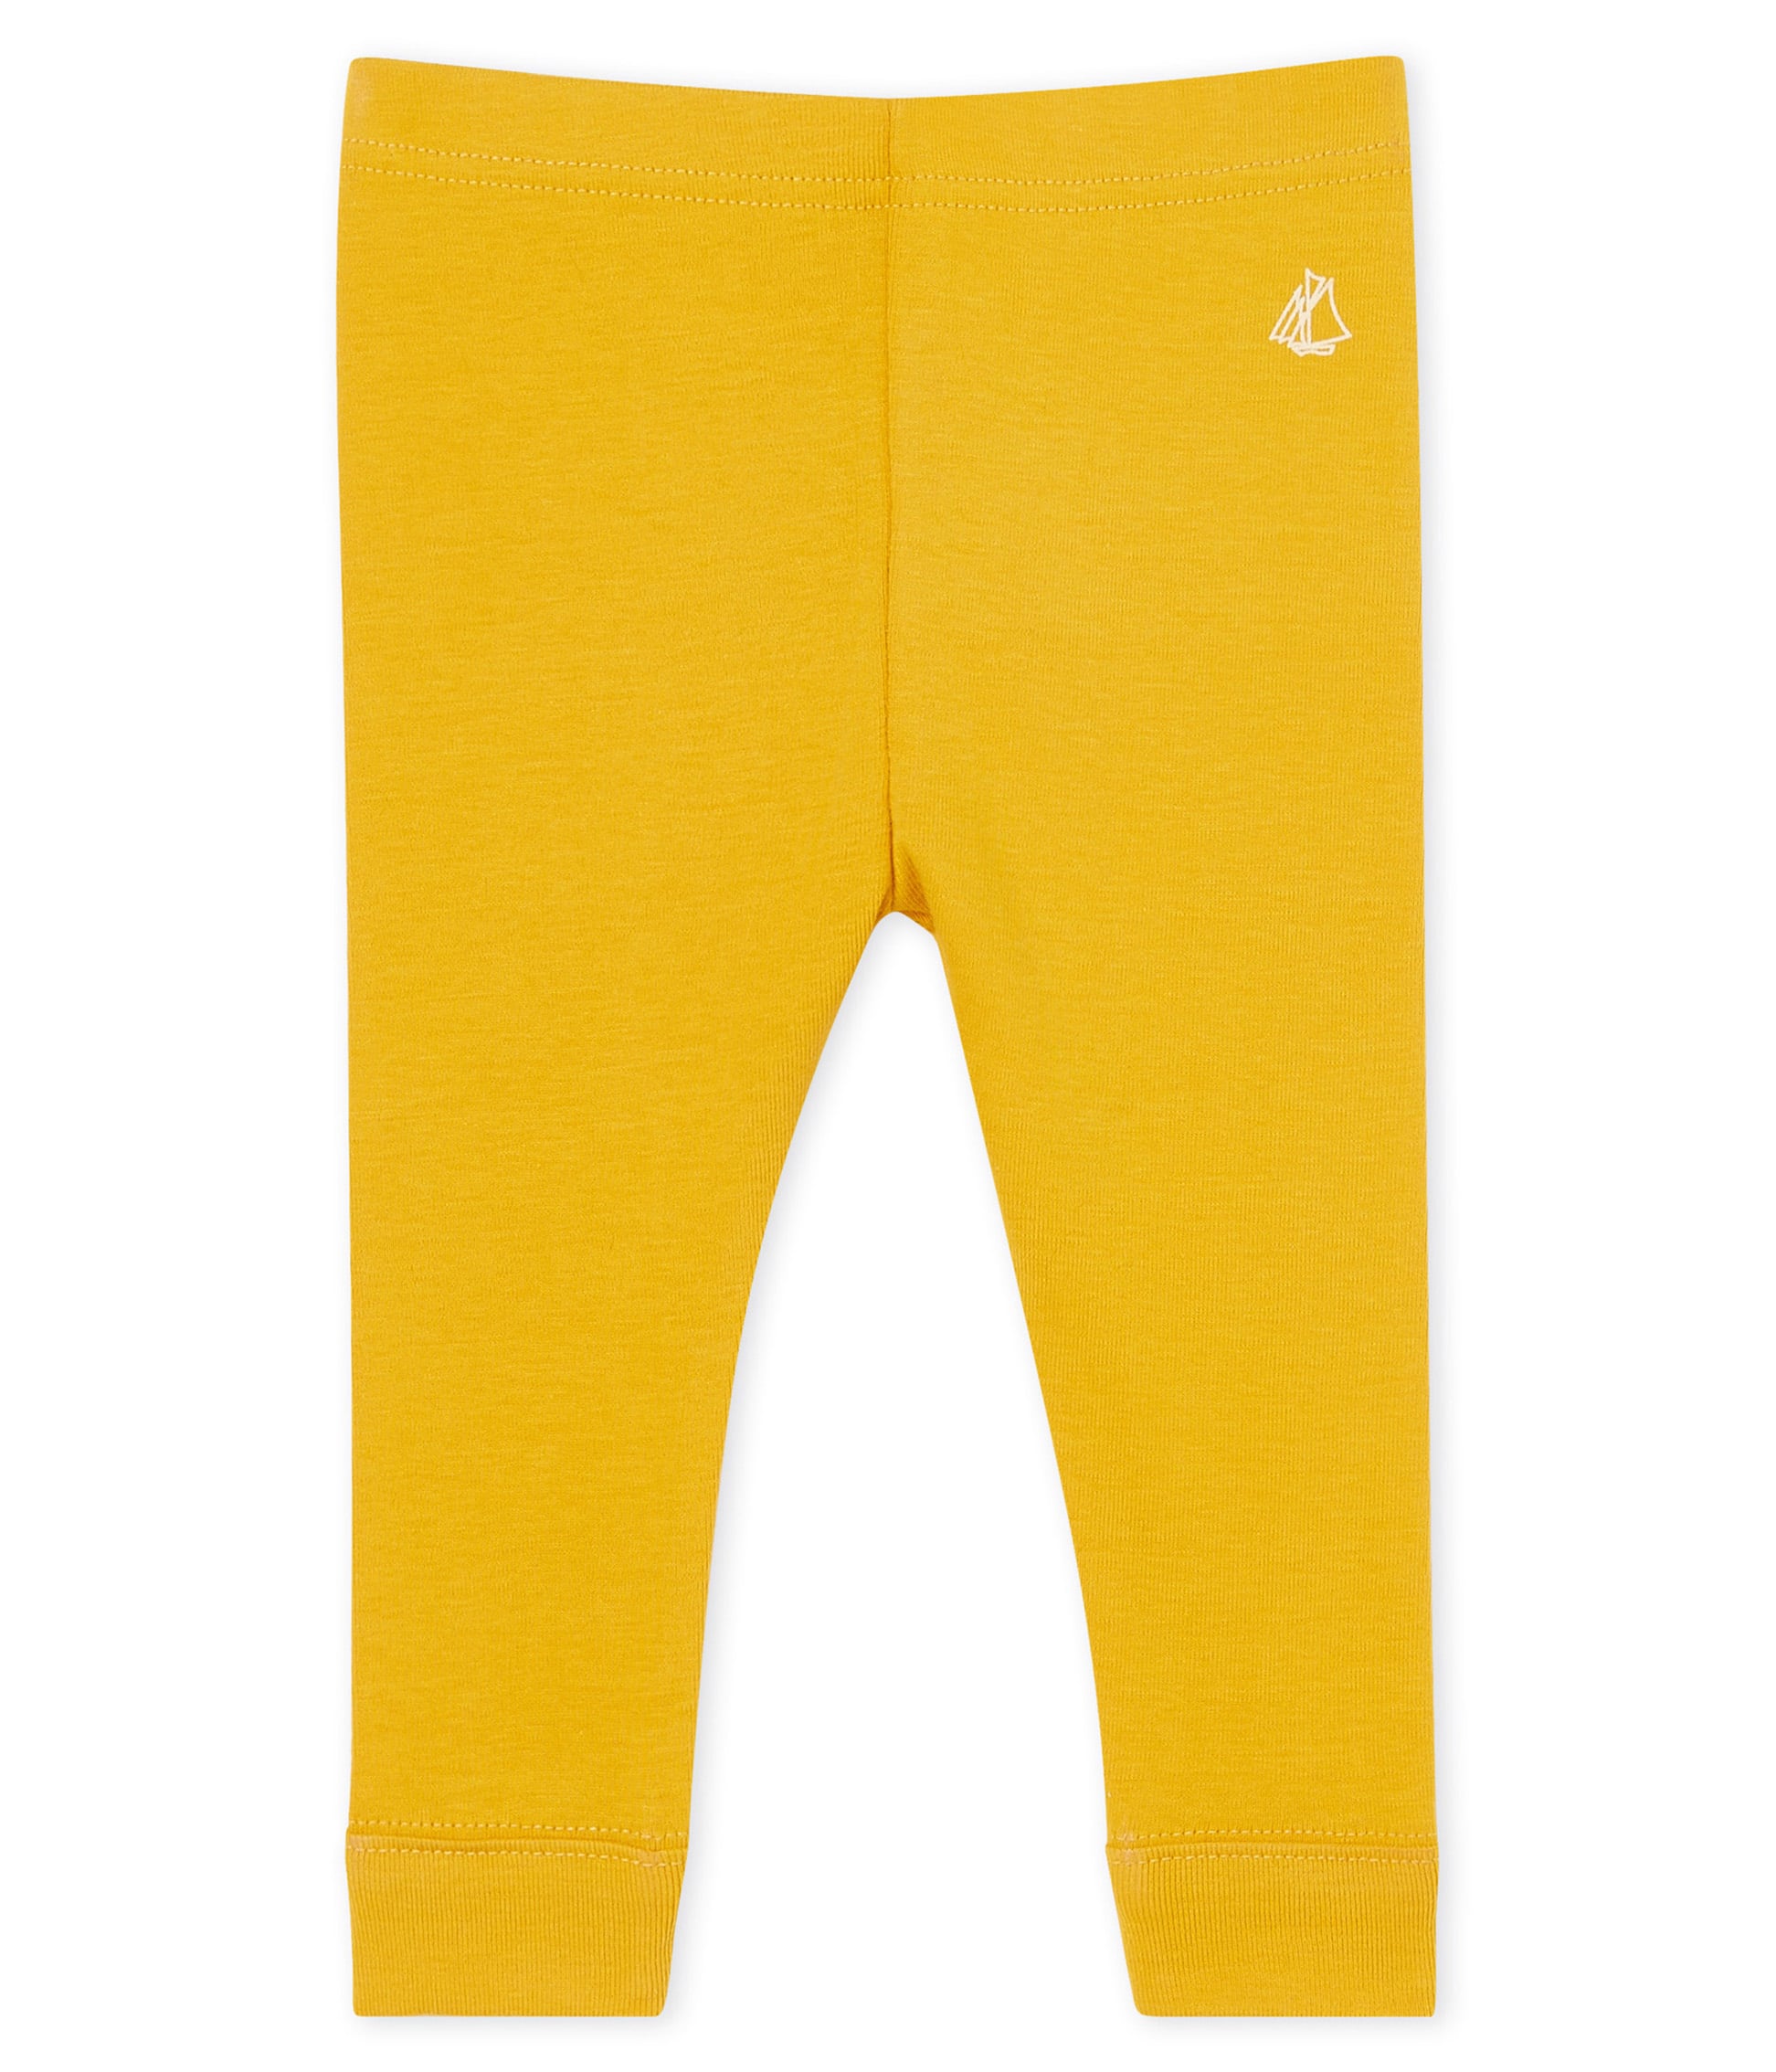 childrens yellow leggings uk